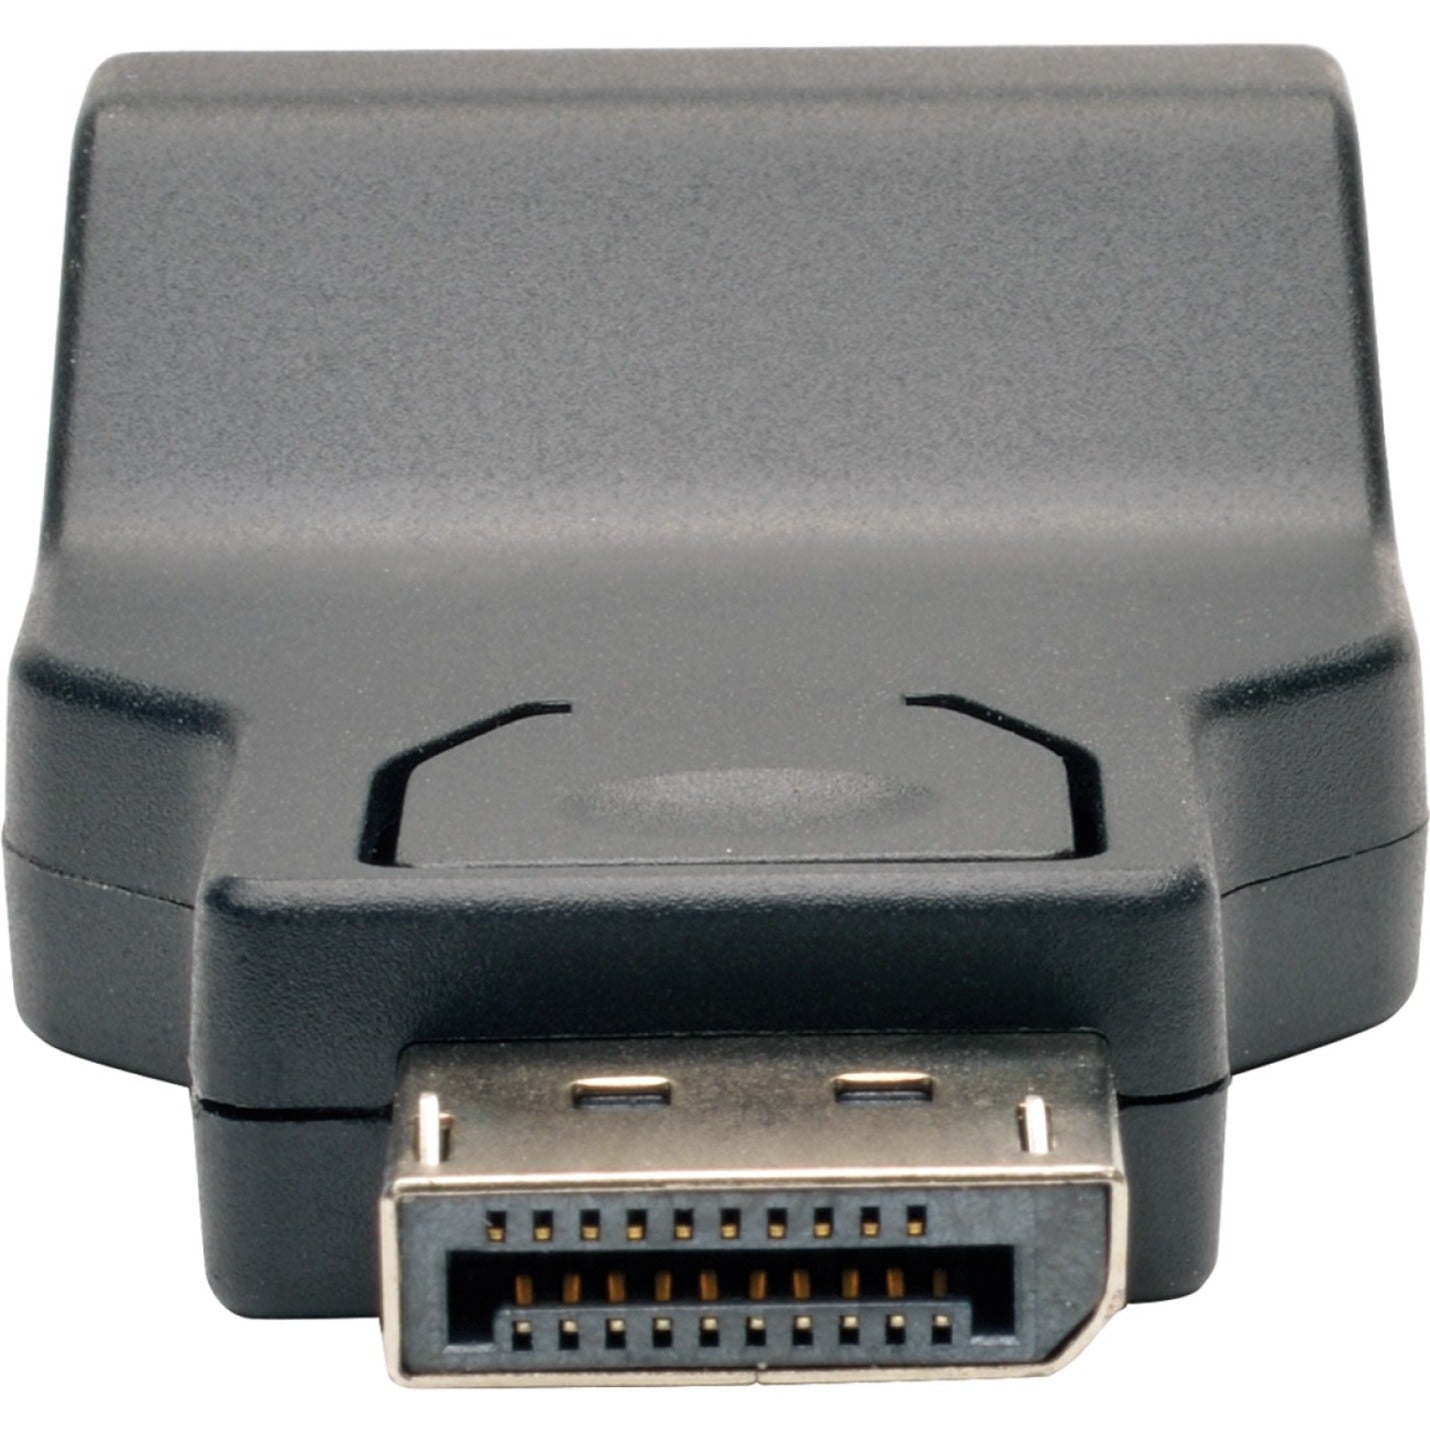 Tripp Lite P134-000-VGA-V2 Adaptador convertidor compacto de DisplayPort 1.2 a VGA (DP macho a hembra VGA) moldeado compatible con resolución de 1920 x 1200 negro. Marca: Tripp Lite.